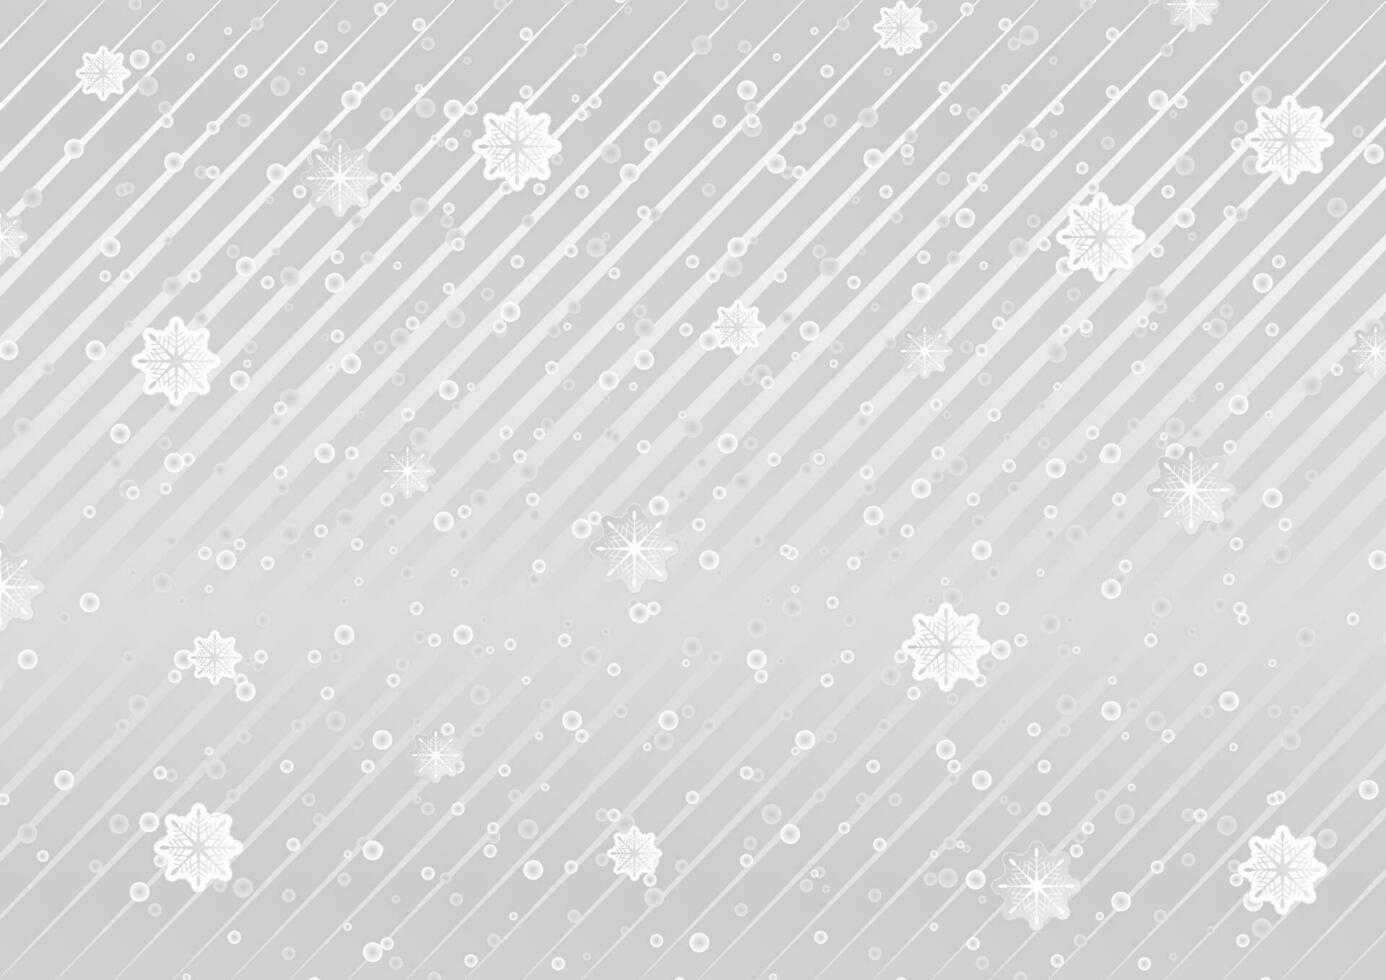 gris y blanco rayas y copos de nieve resumen antecedentes vector